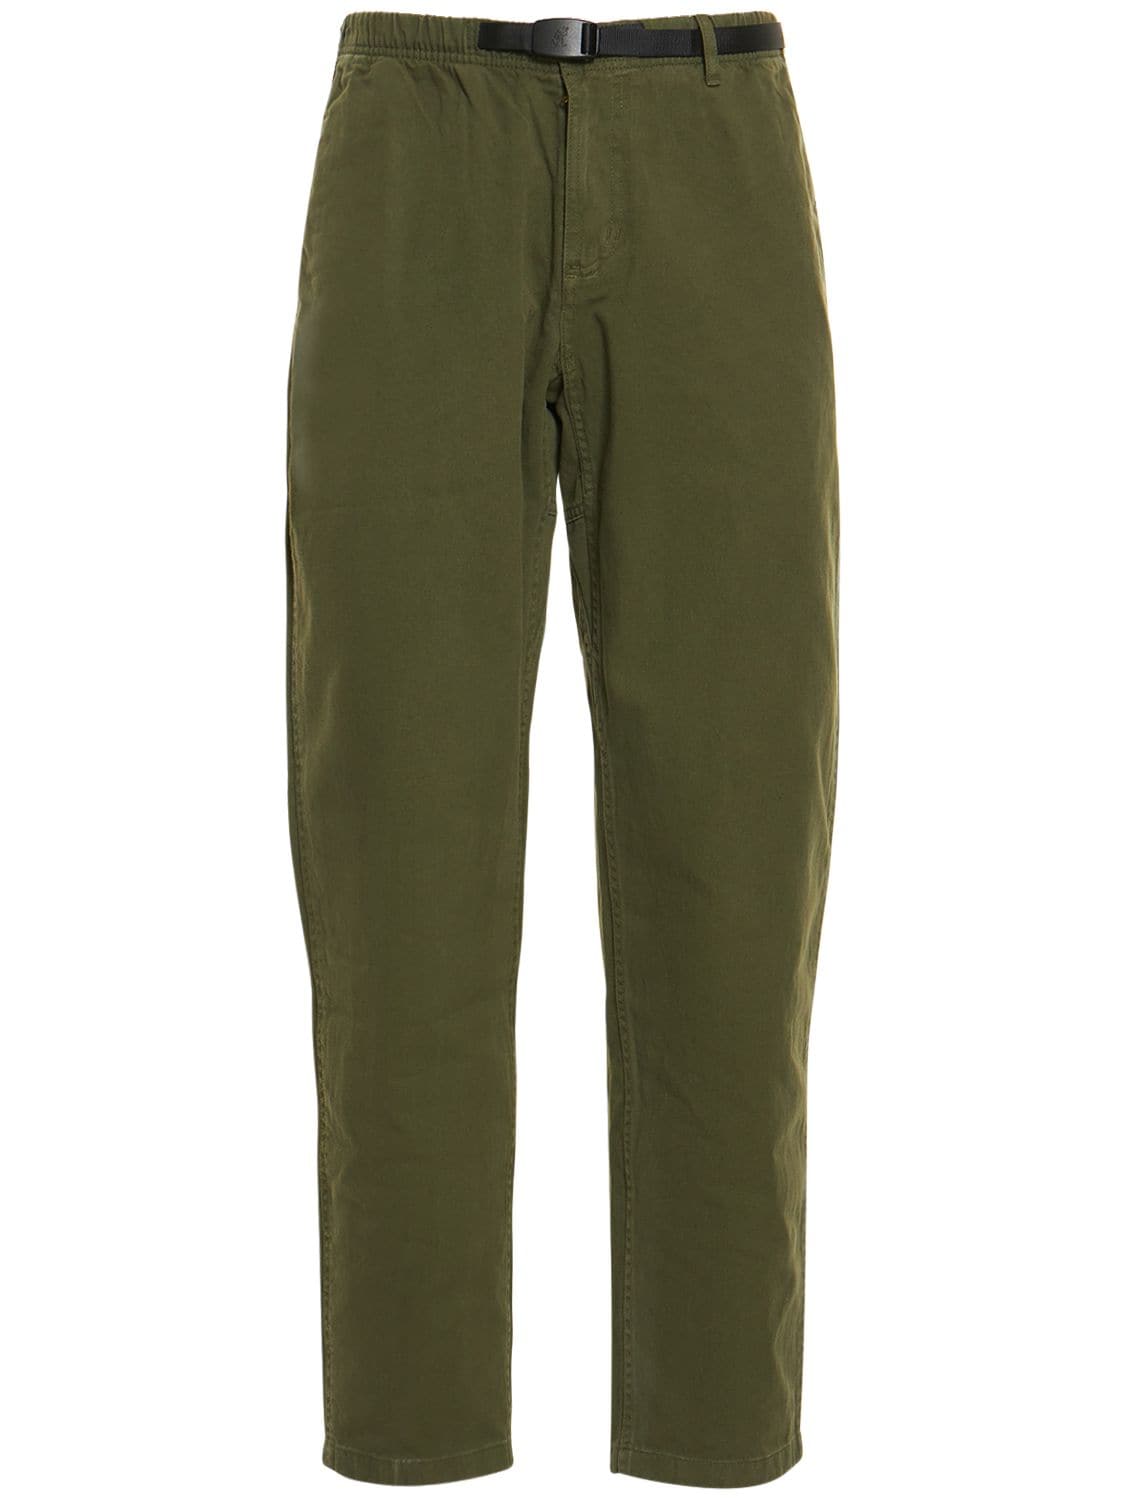 GRAMICCI CLASSIC ORGANIC COTTON TWILL trousers